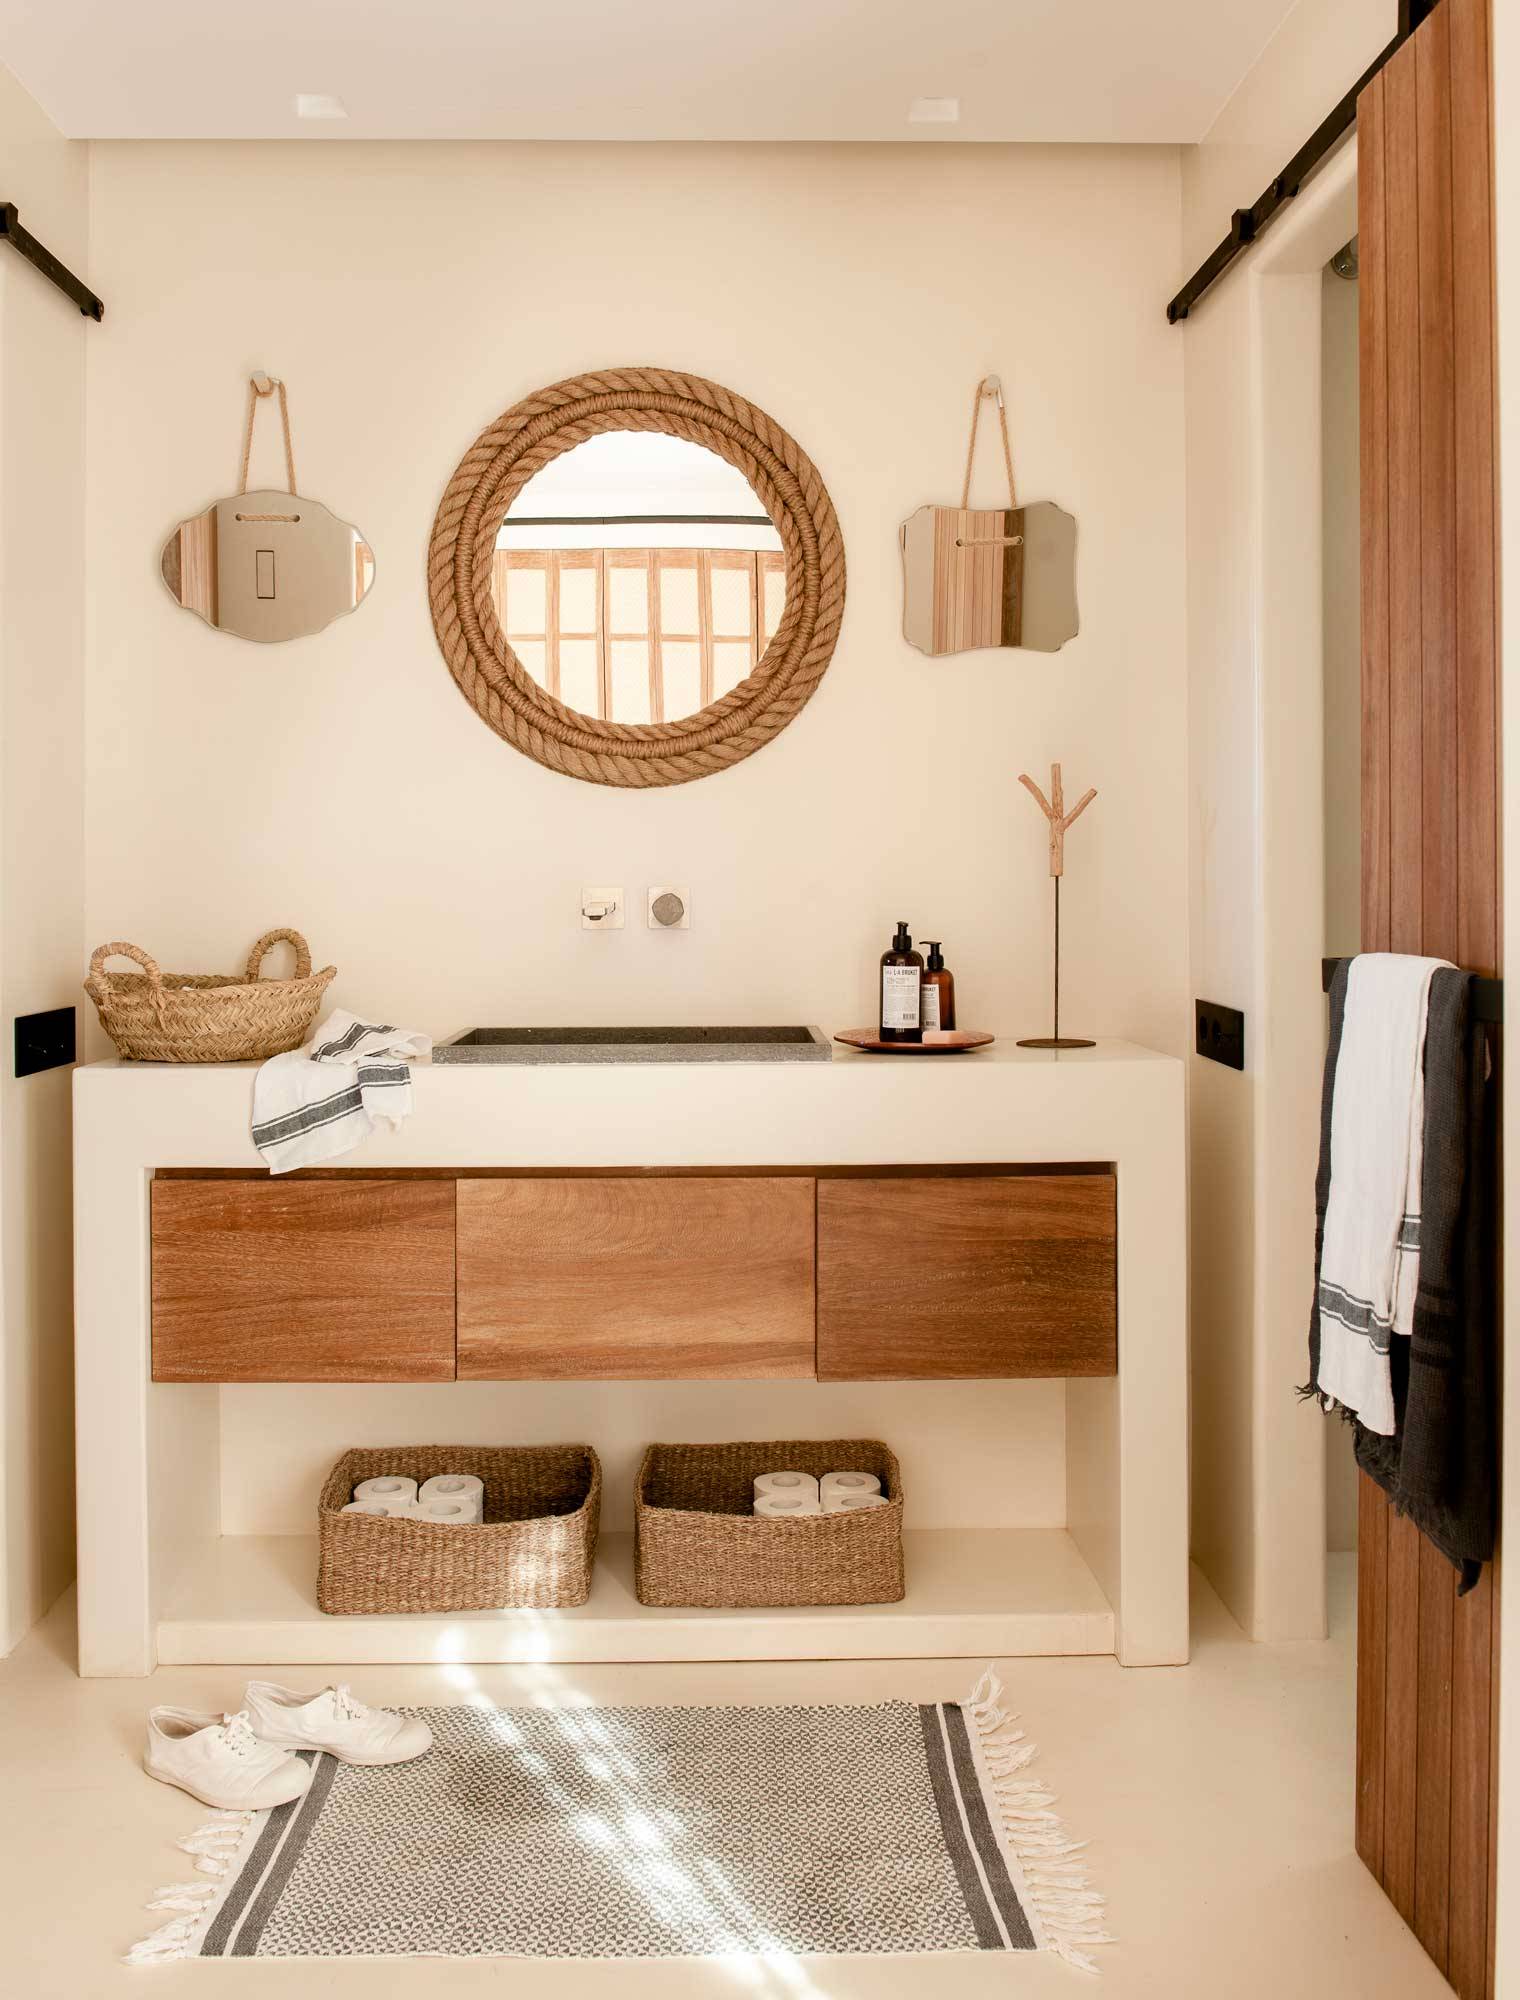 Baño de microcemento con mueble de madera.